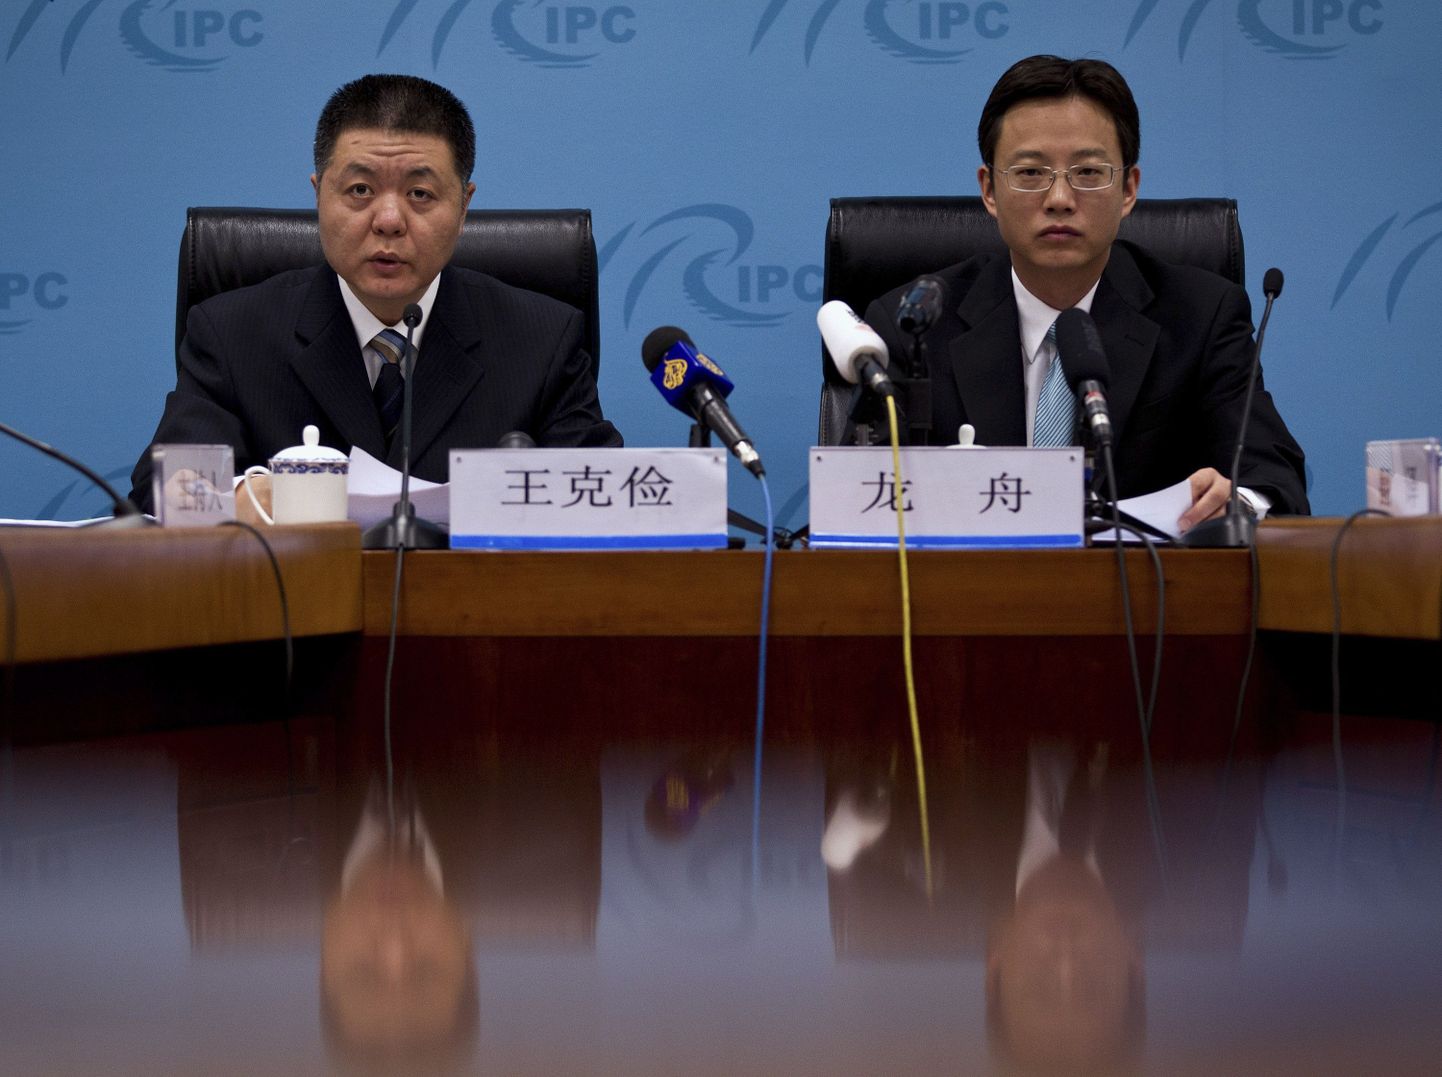 Hiina välisministeeriumi Põhja-Aafrika ja Lääne-Aasia suhete asedirektor Wang Kejian (vasakul)